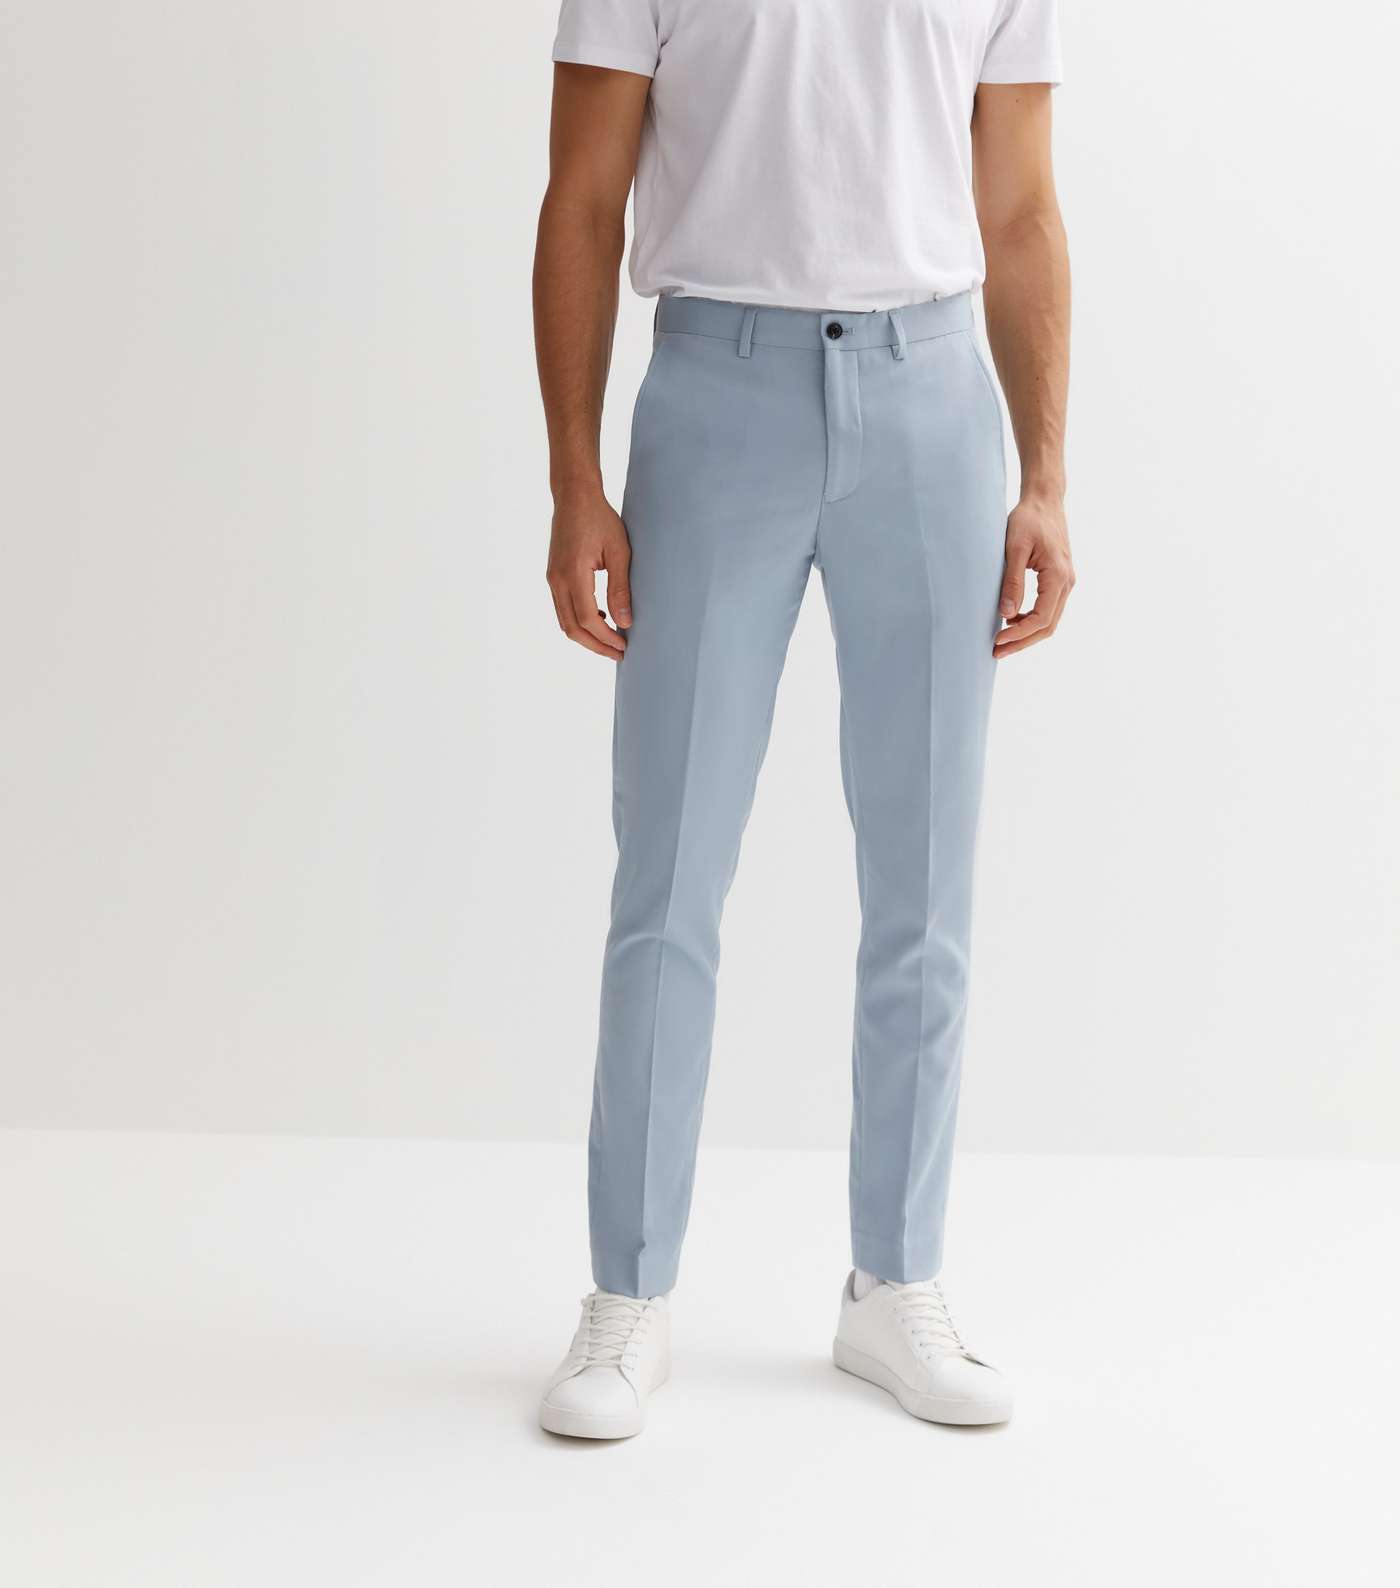 Jack & Jones Pale Blue Slim Fit Trousers Image 2